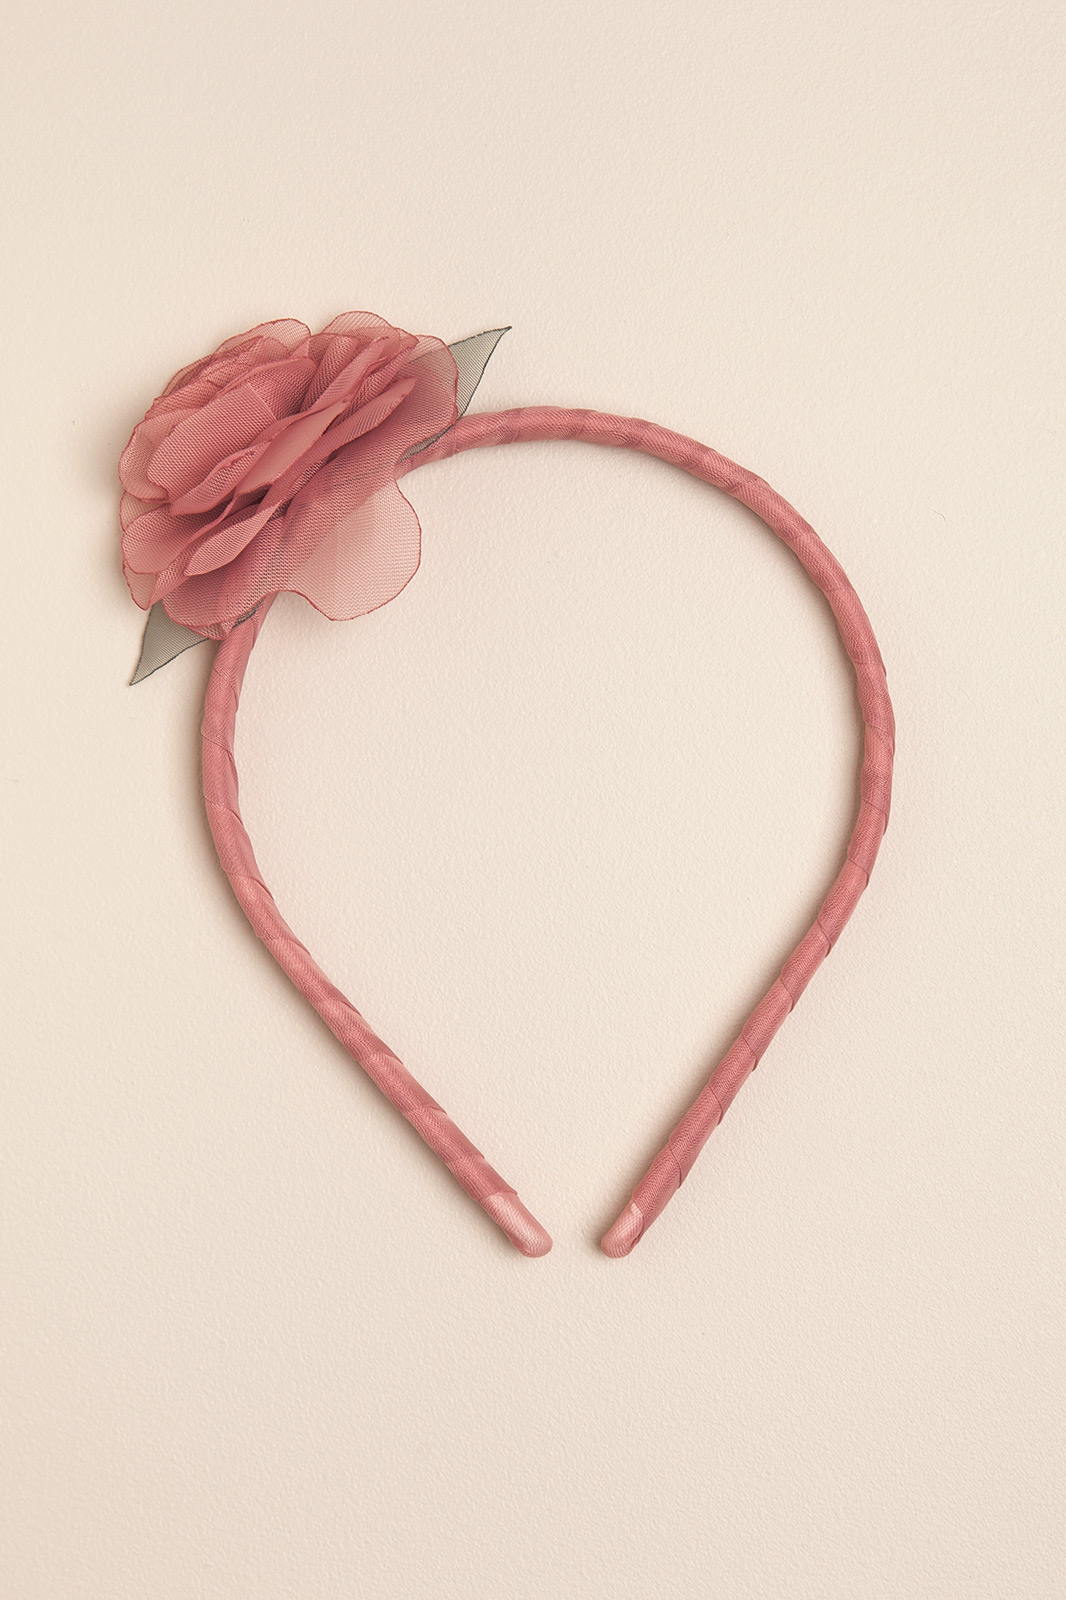 Vincha rigida con una flor rosa romantic